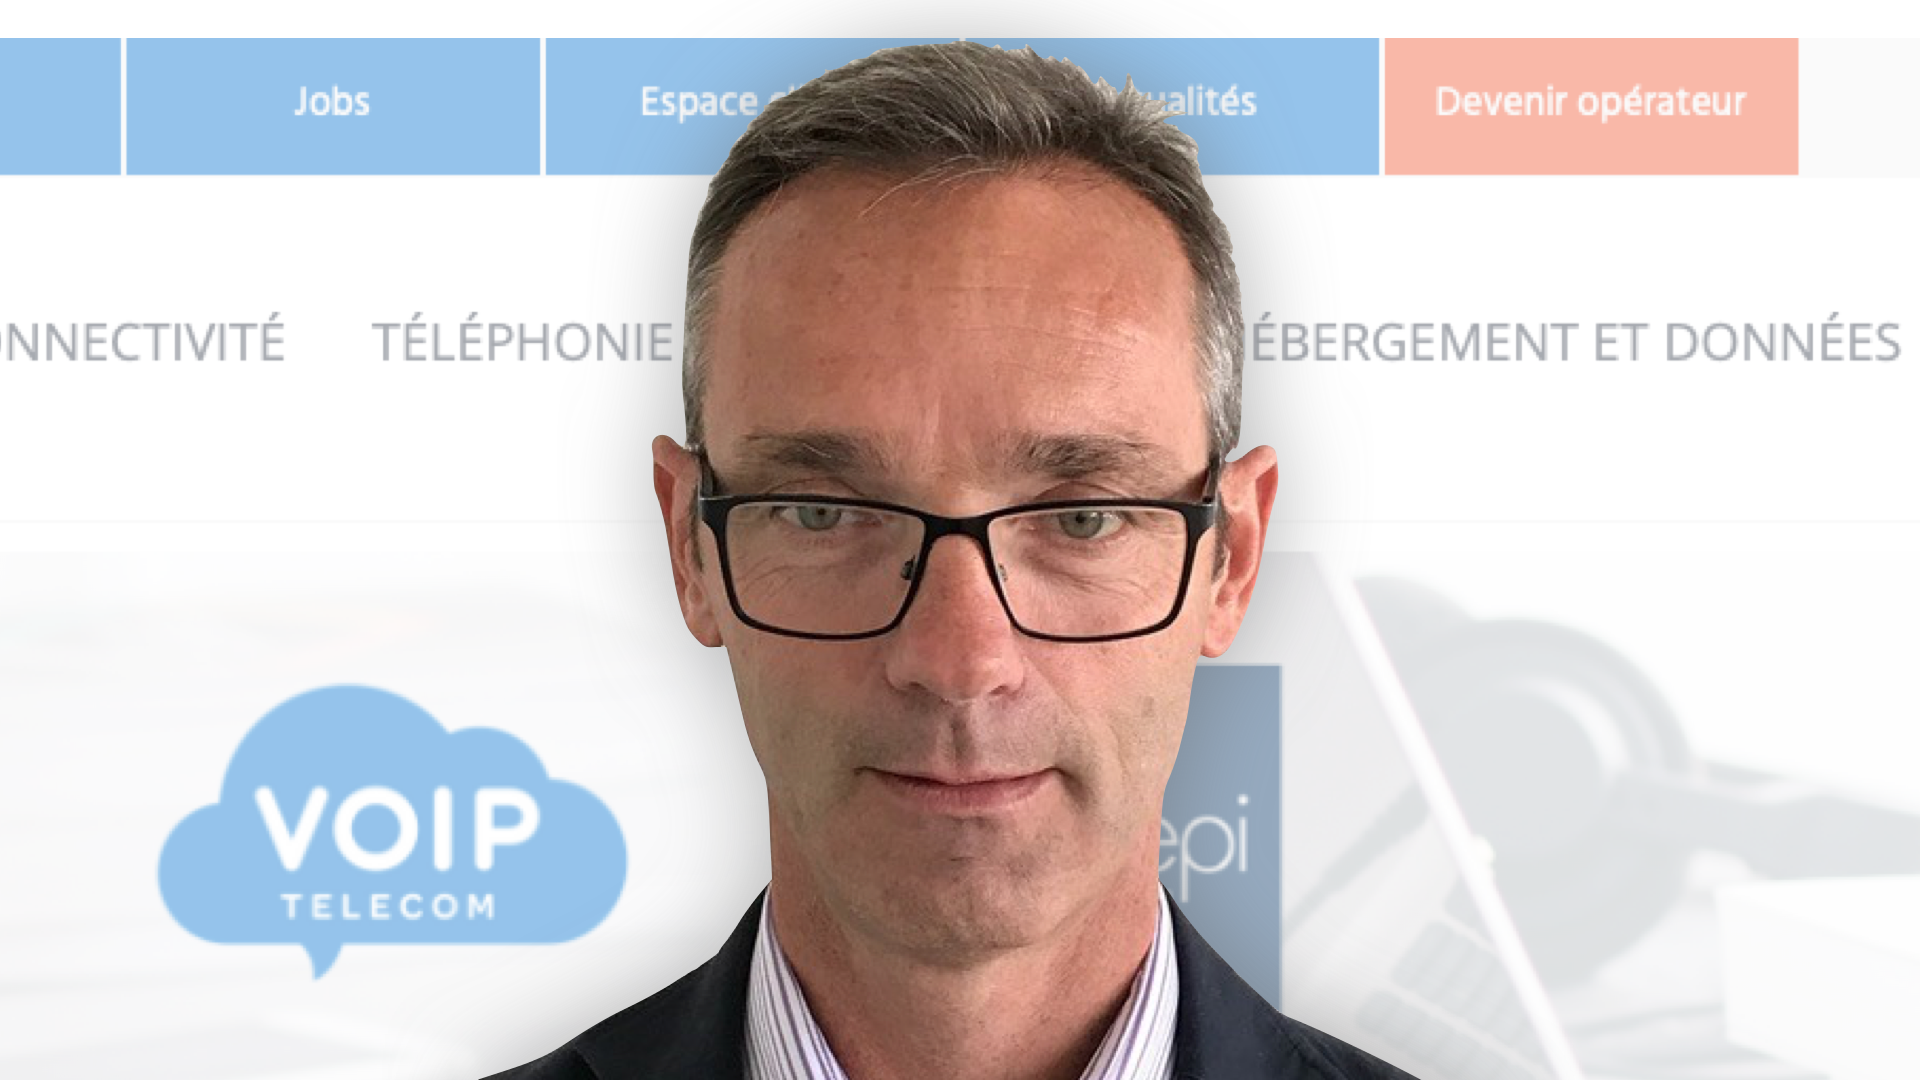 William Binet, Président chez VOIP Telecom